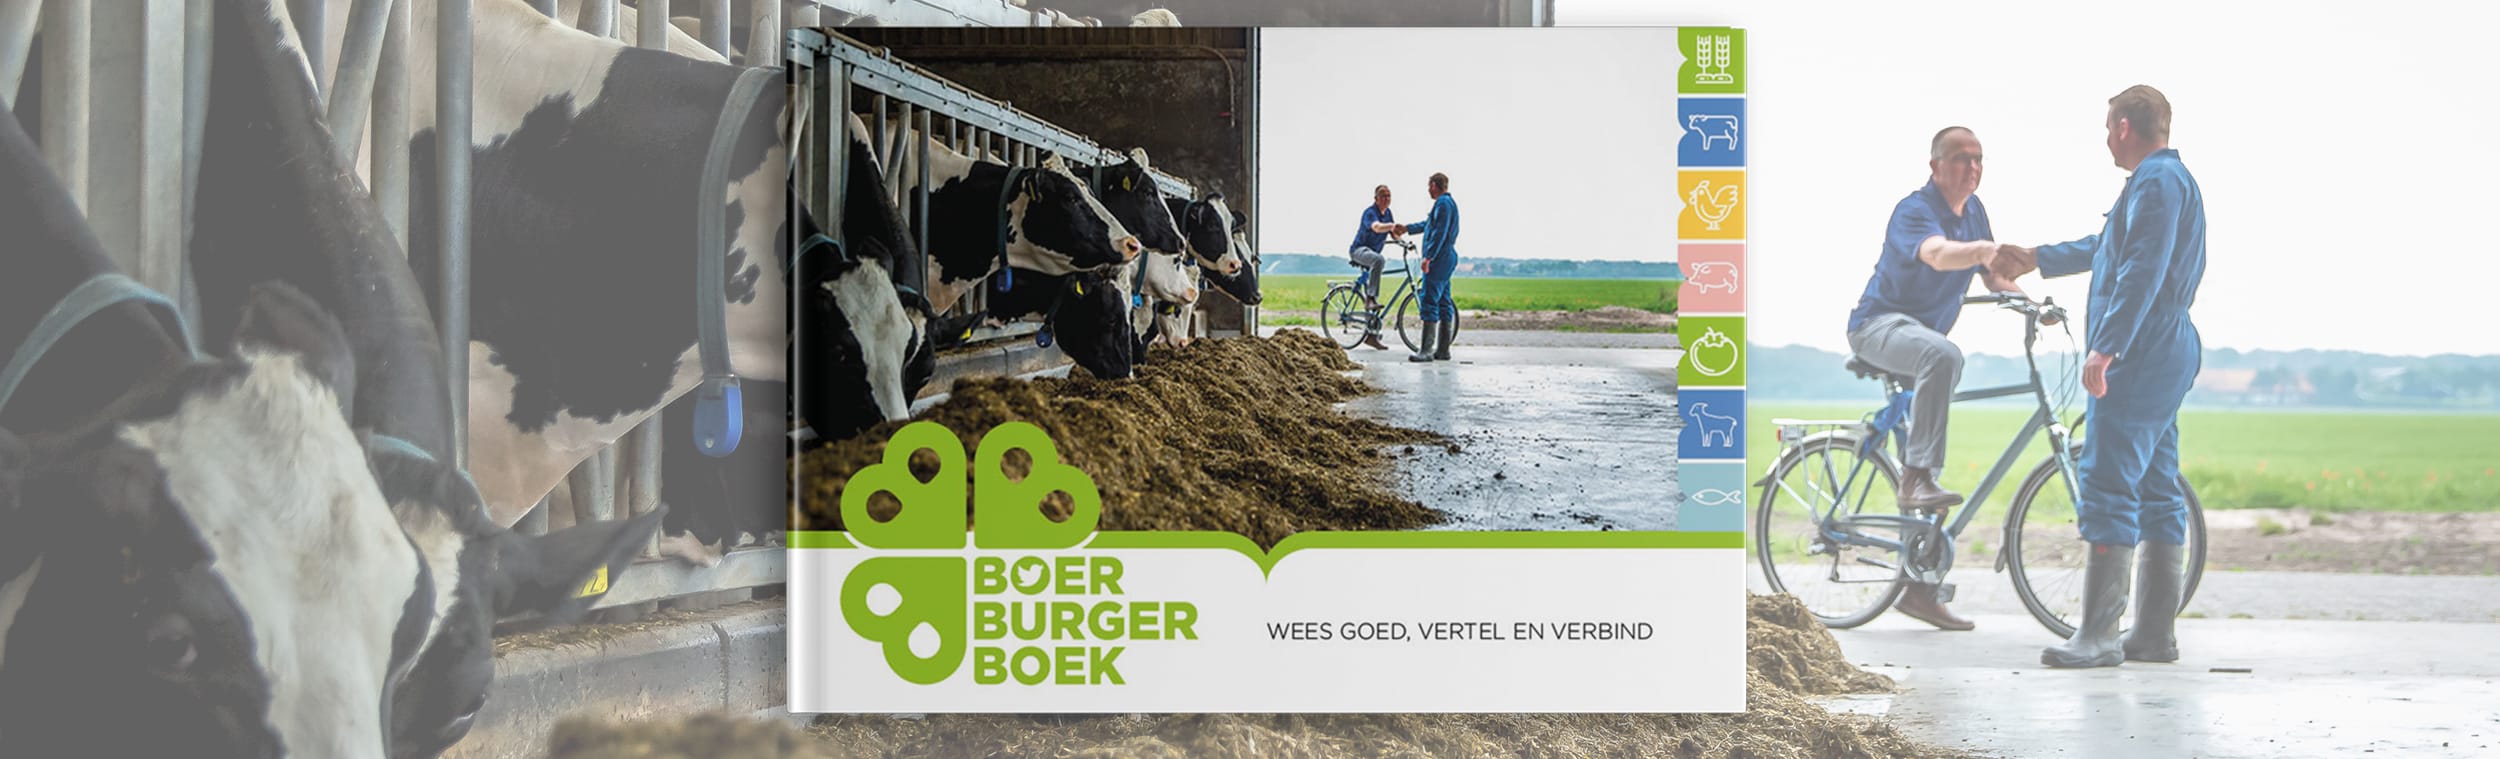 ReMarkAble_Website_Nieuwe_Portfolio_BoerBurgerBoek